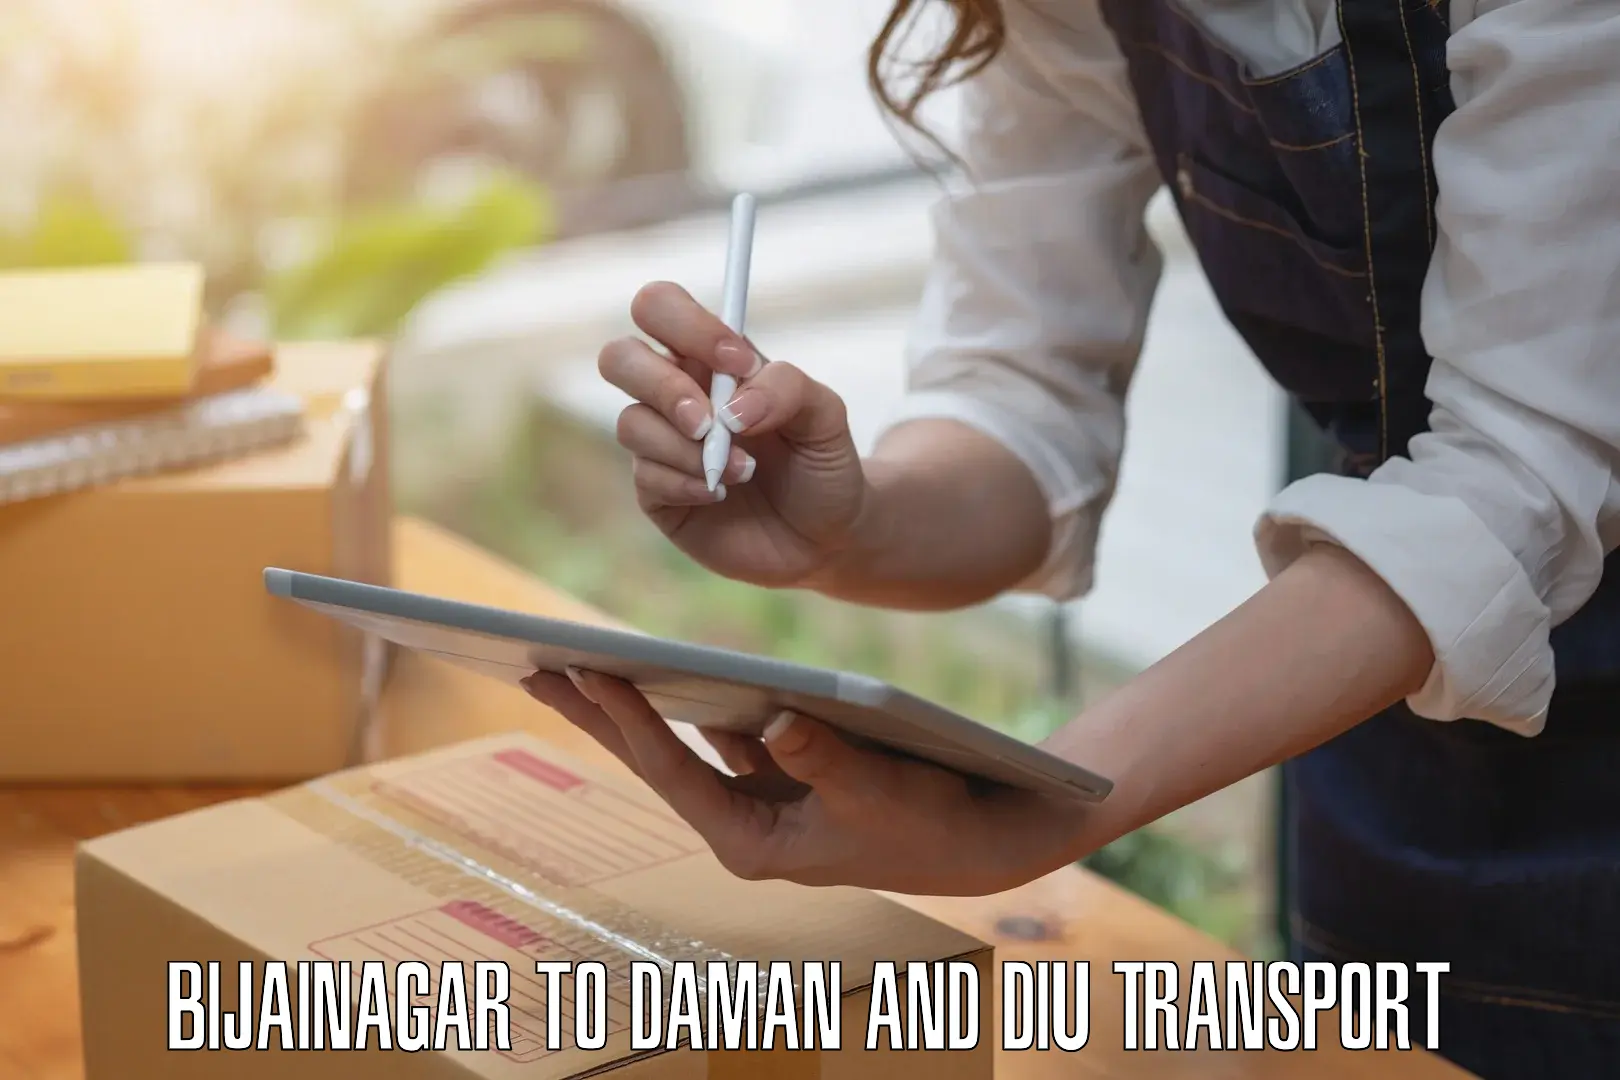 Daily transport service Bijainagar to Daman and Diu